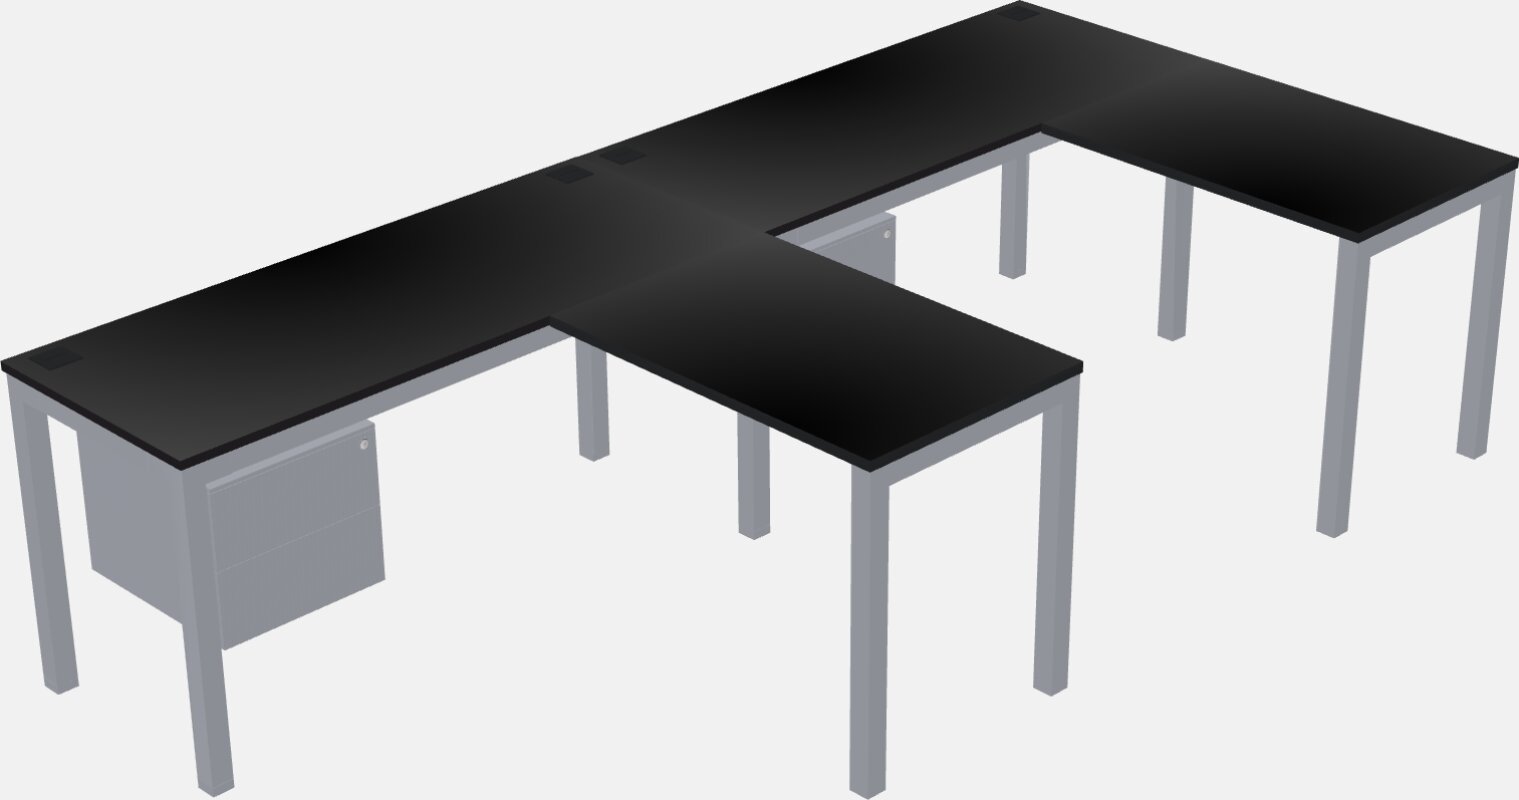 L-shaped na mesa